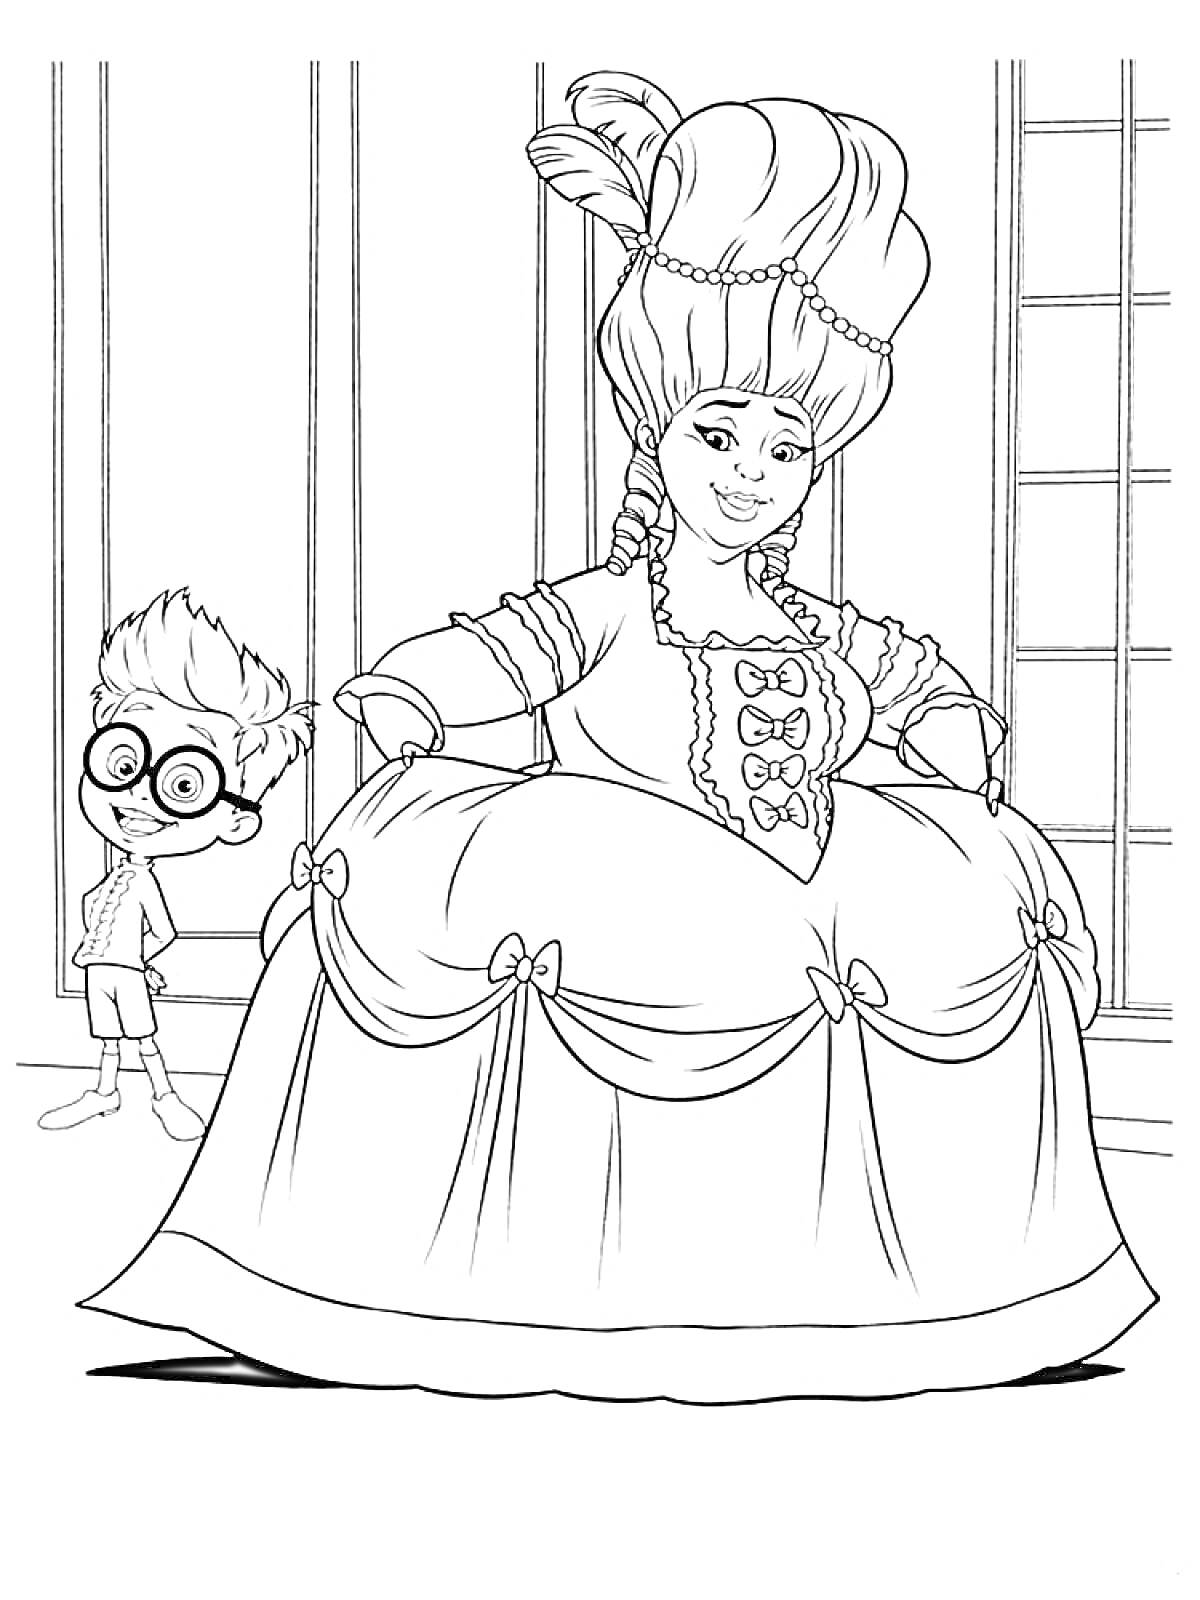 Раскраска Мистер Пибоди и Шерман с дамой в пышном платье XVIII века